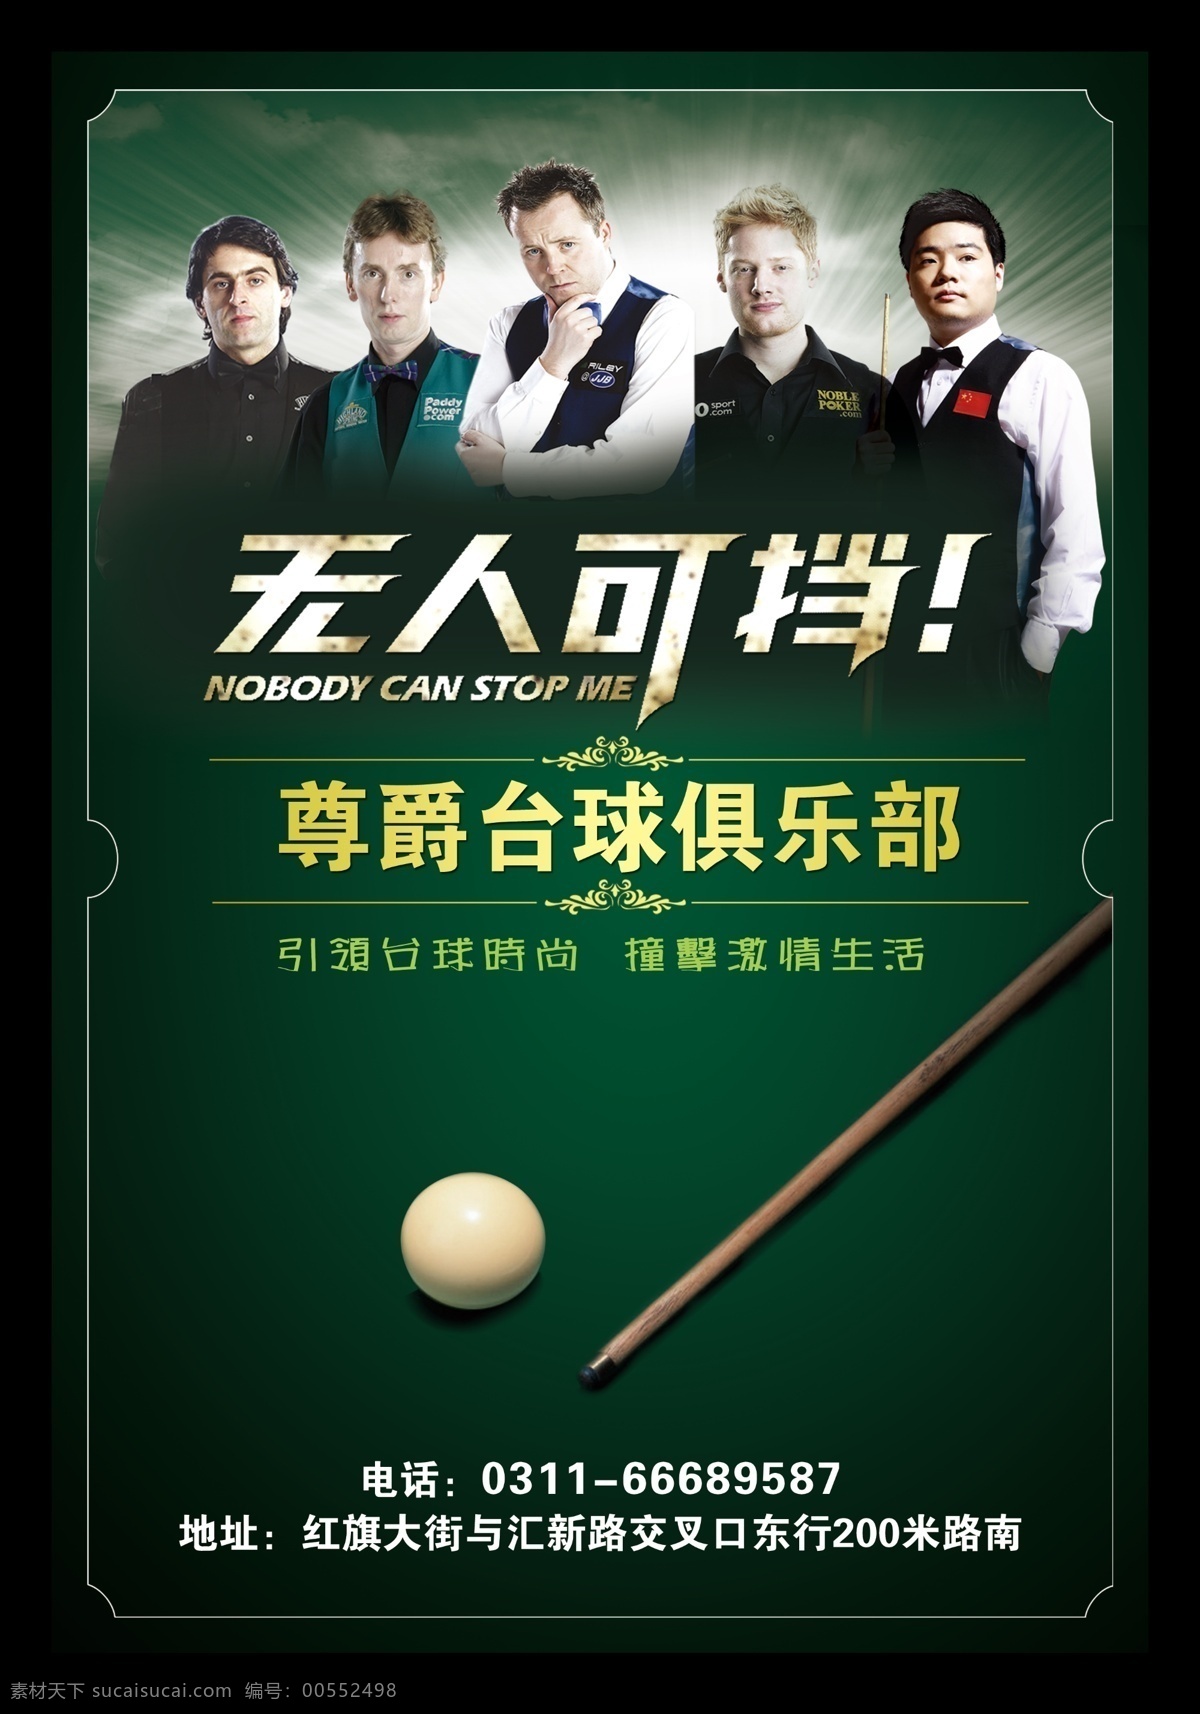 尊爵 台球 俱乐部 桌球 桌球俱乐部 台球海报设计 桌球无人可挡 国内广告设计 广告设计模板 源文件